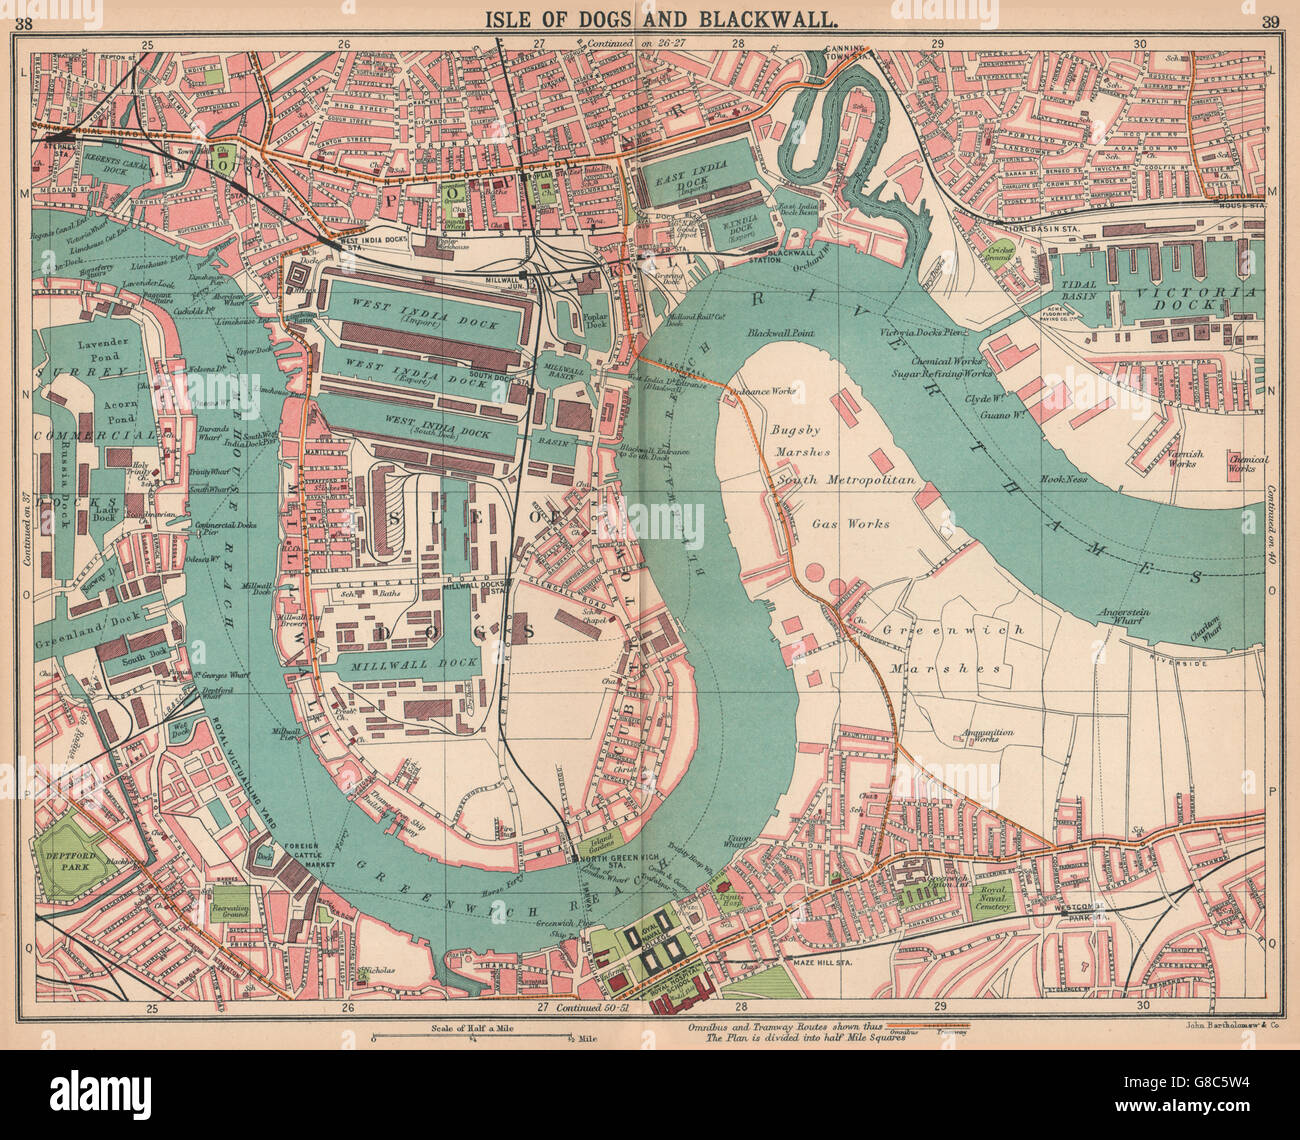 LONDON-E: Insel der Hunde Blackwall Greenwich Pappel Surrey Docks, 1913 alte Karte Stockfoto